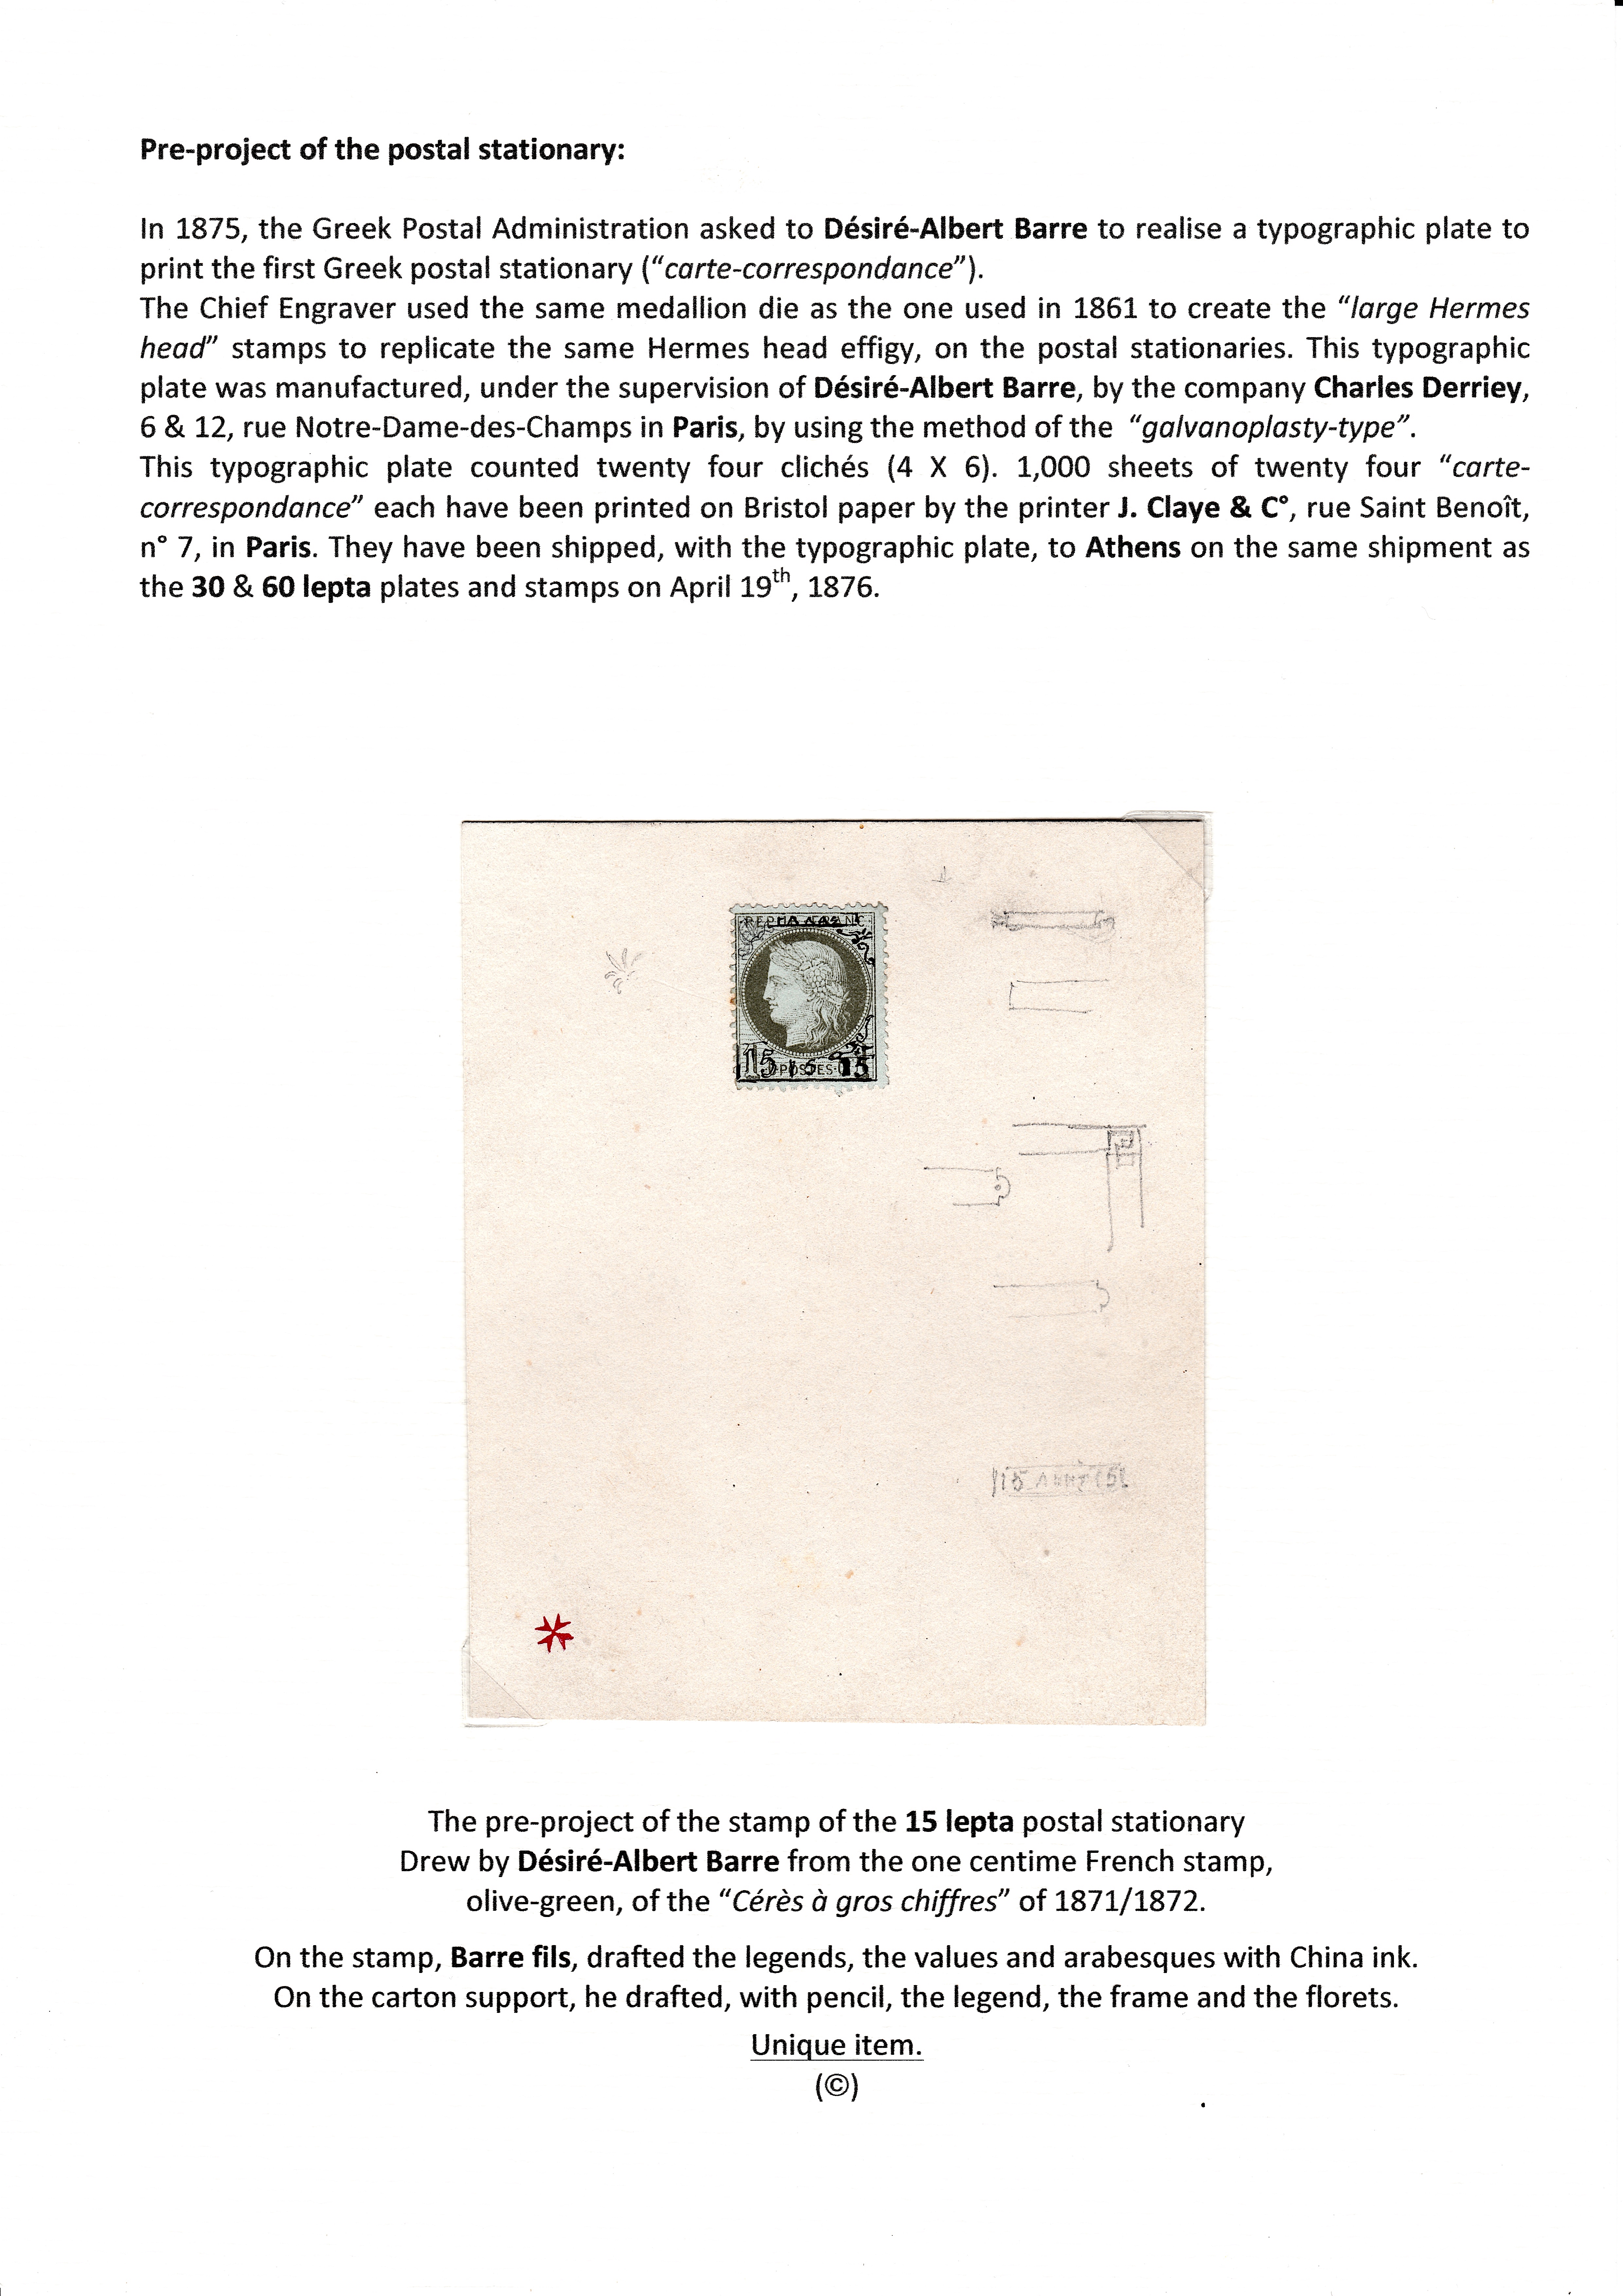 La fabrication et l���utilisation postale des tirages de Paris de la grosse t��te d���Herm��s de Gr��ce��� p. 61